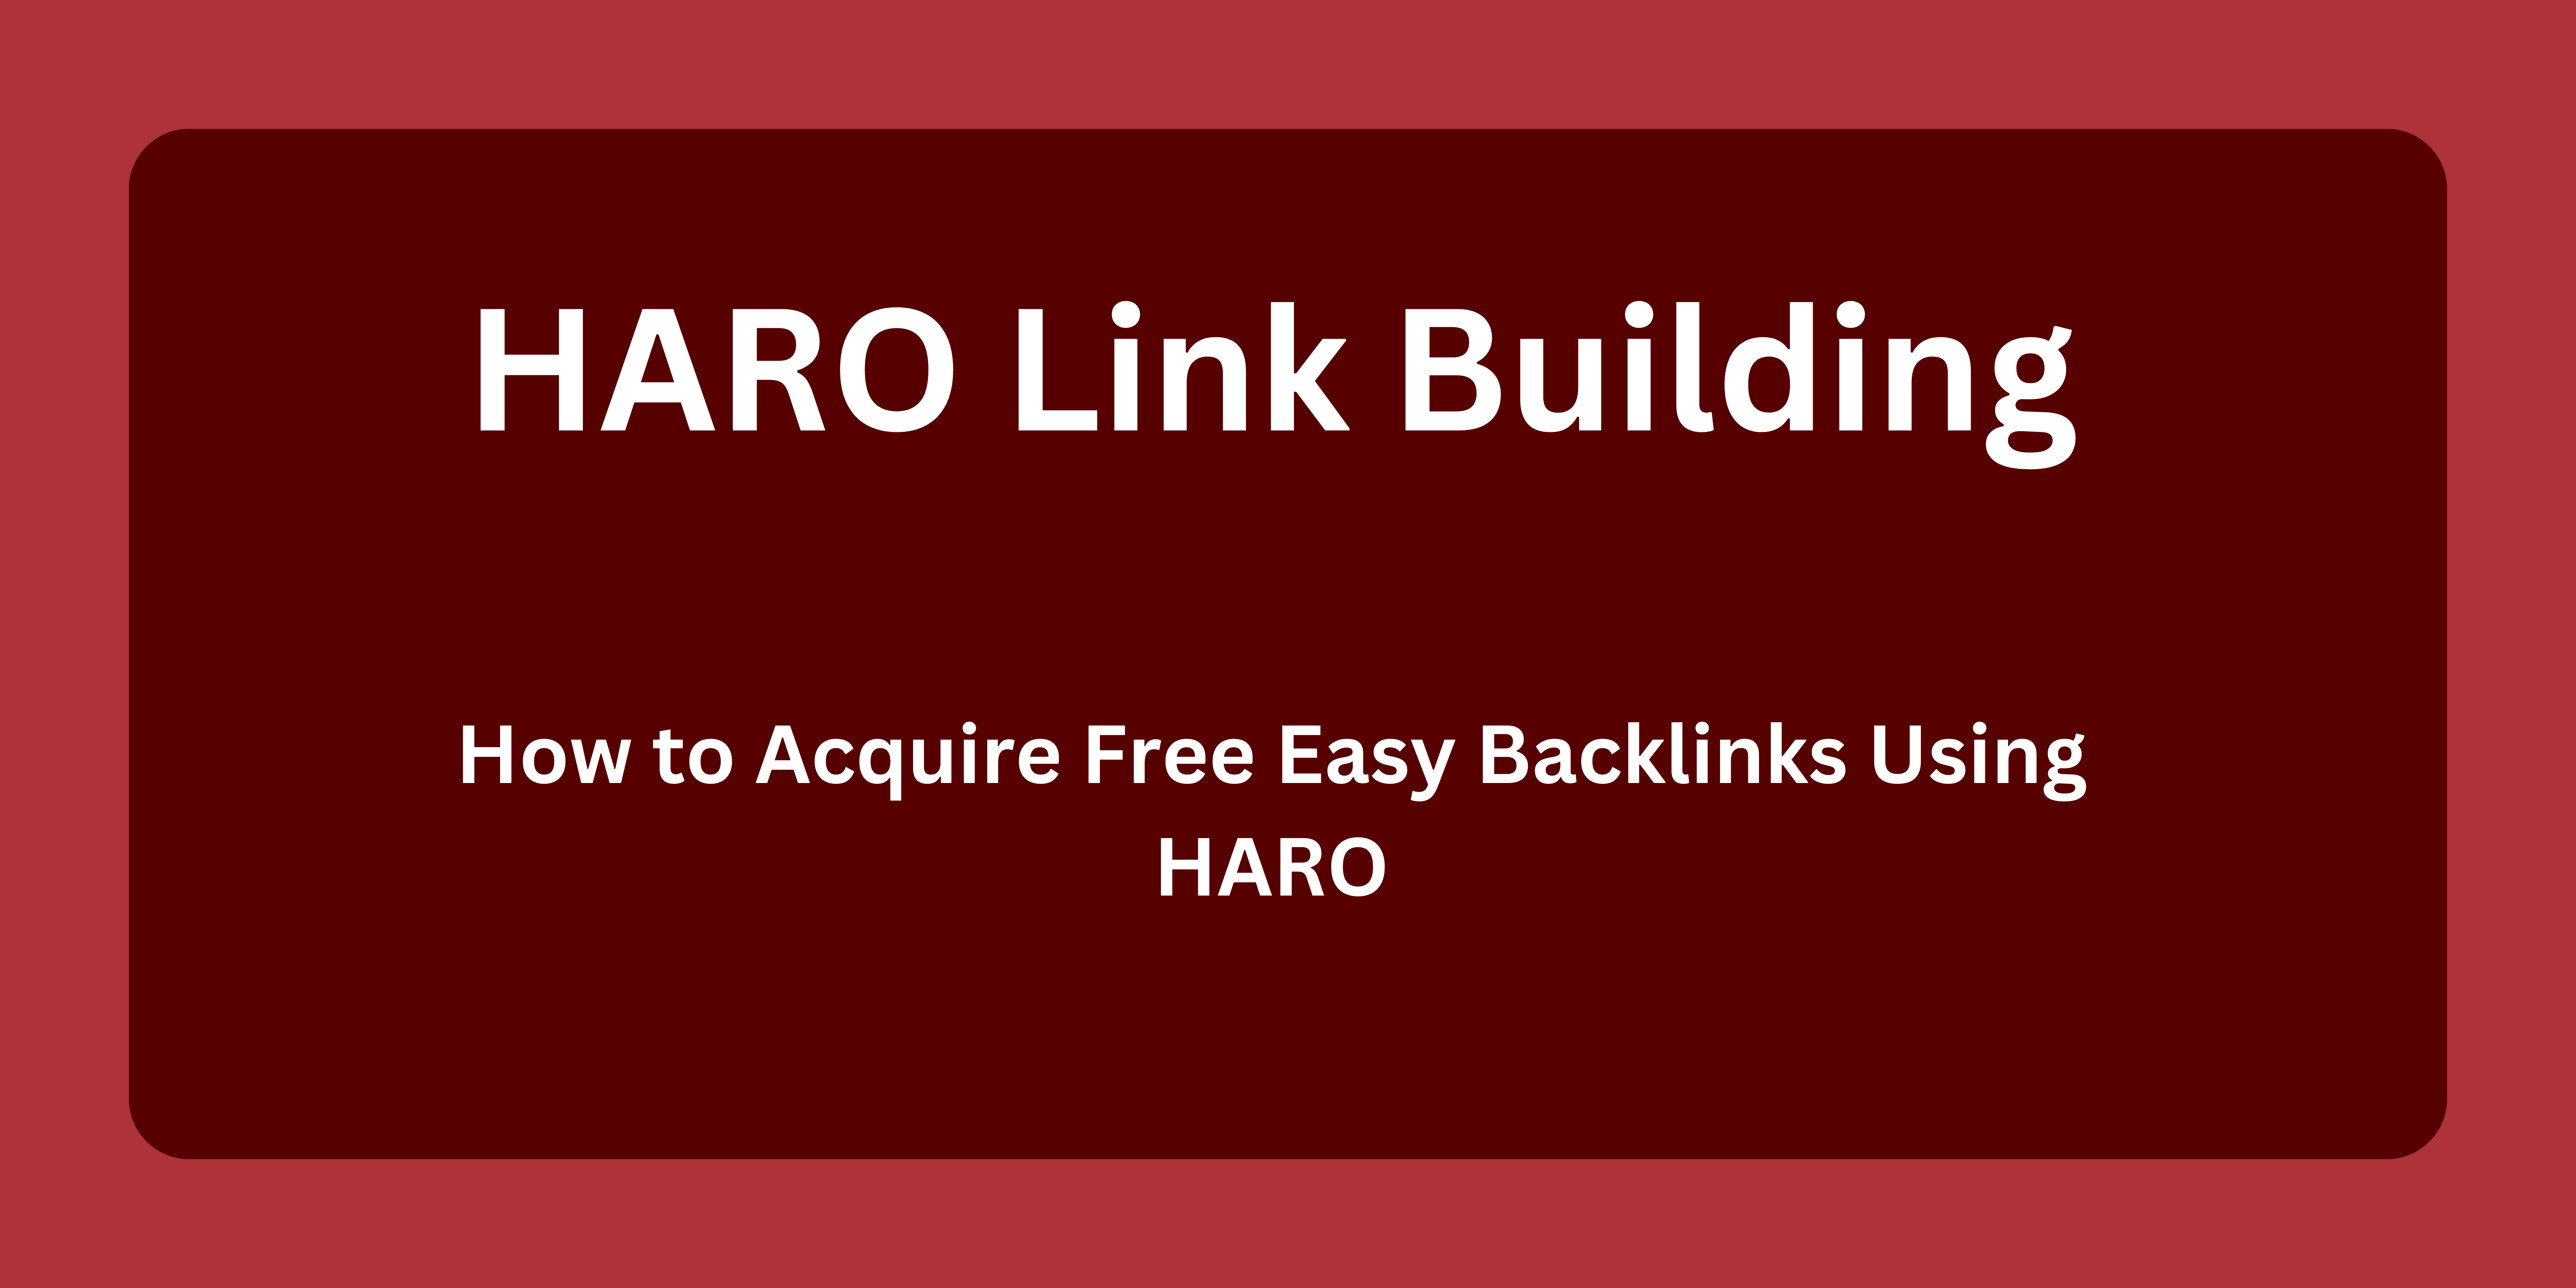 Haro link building